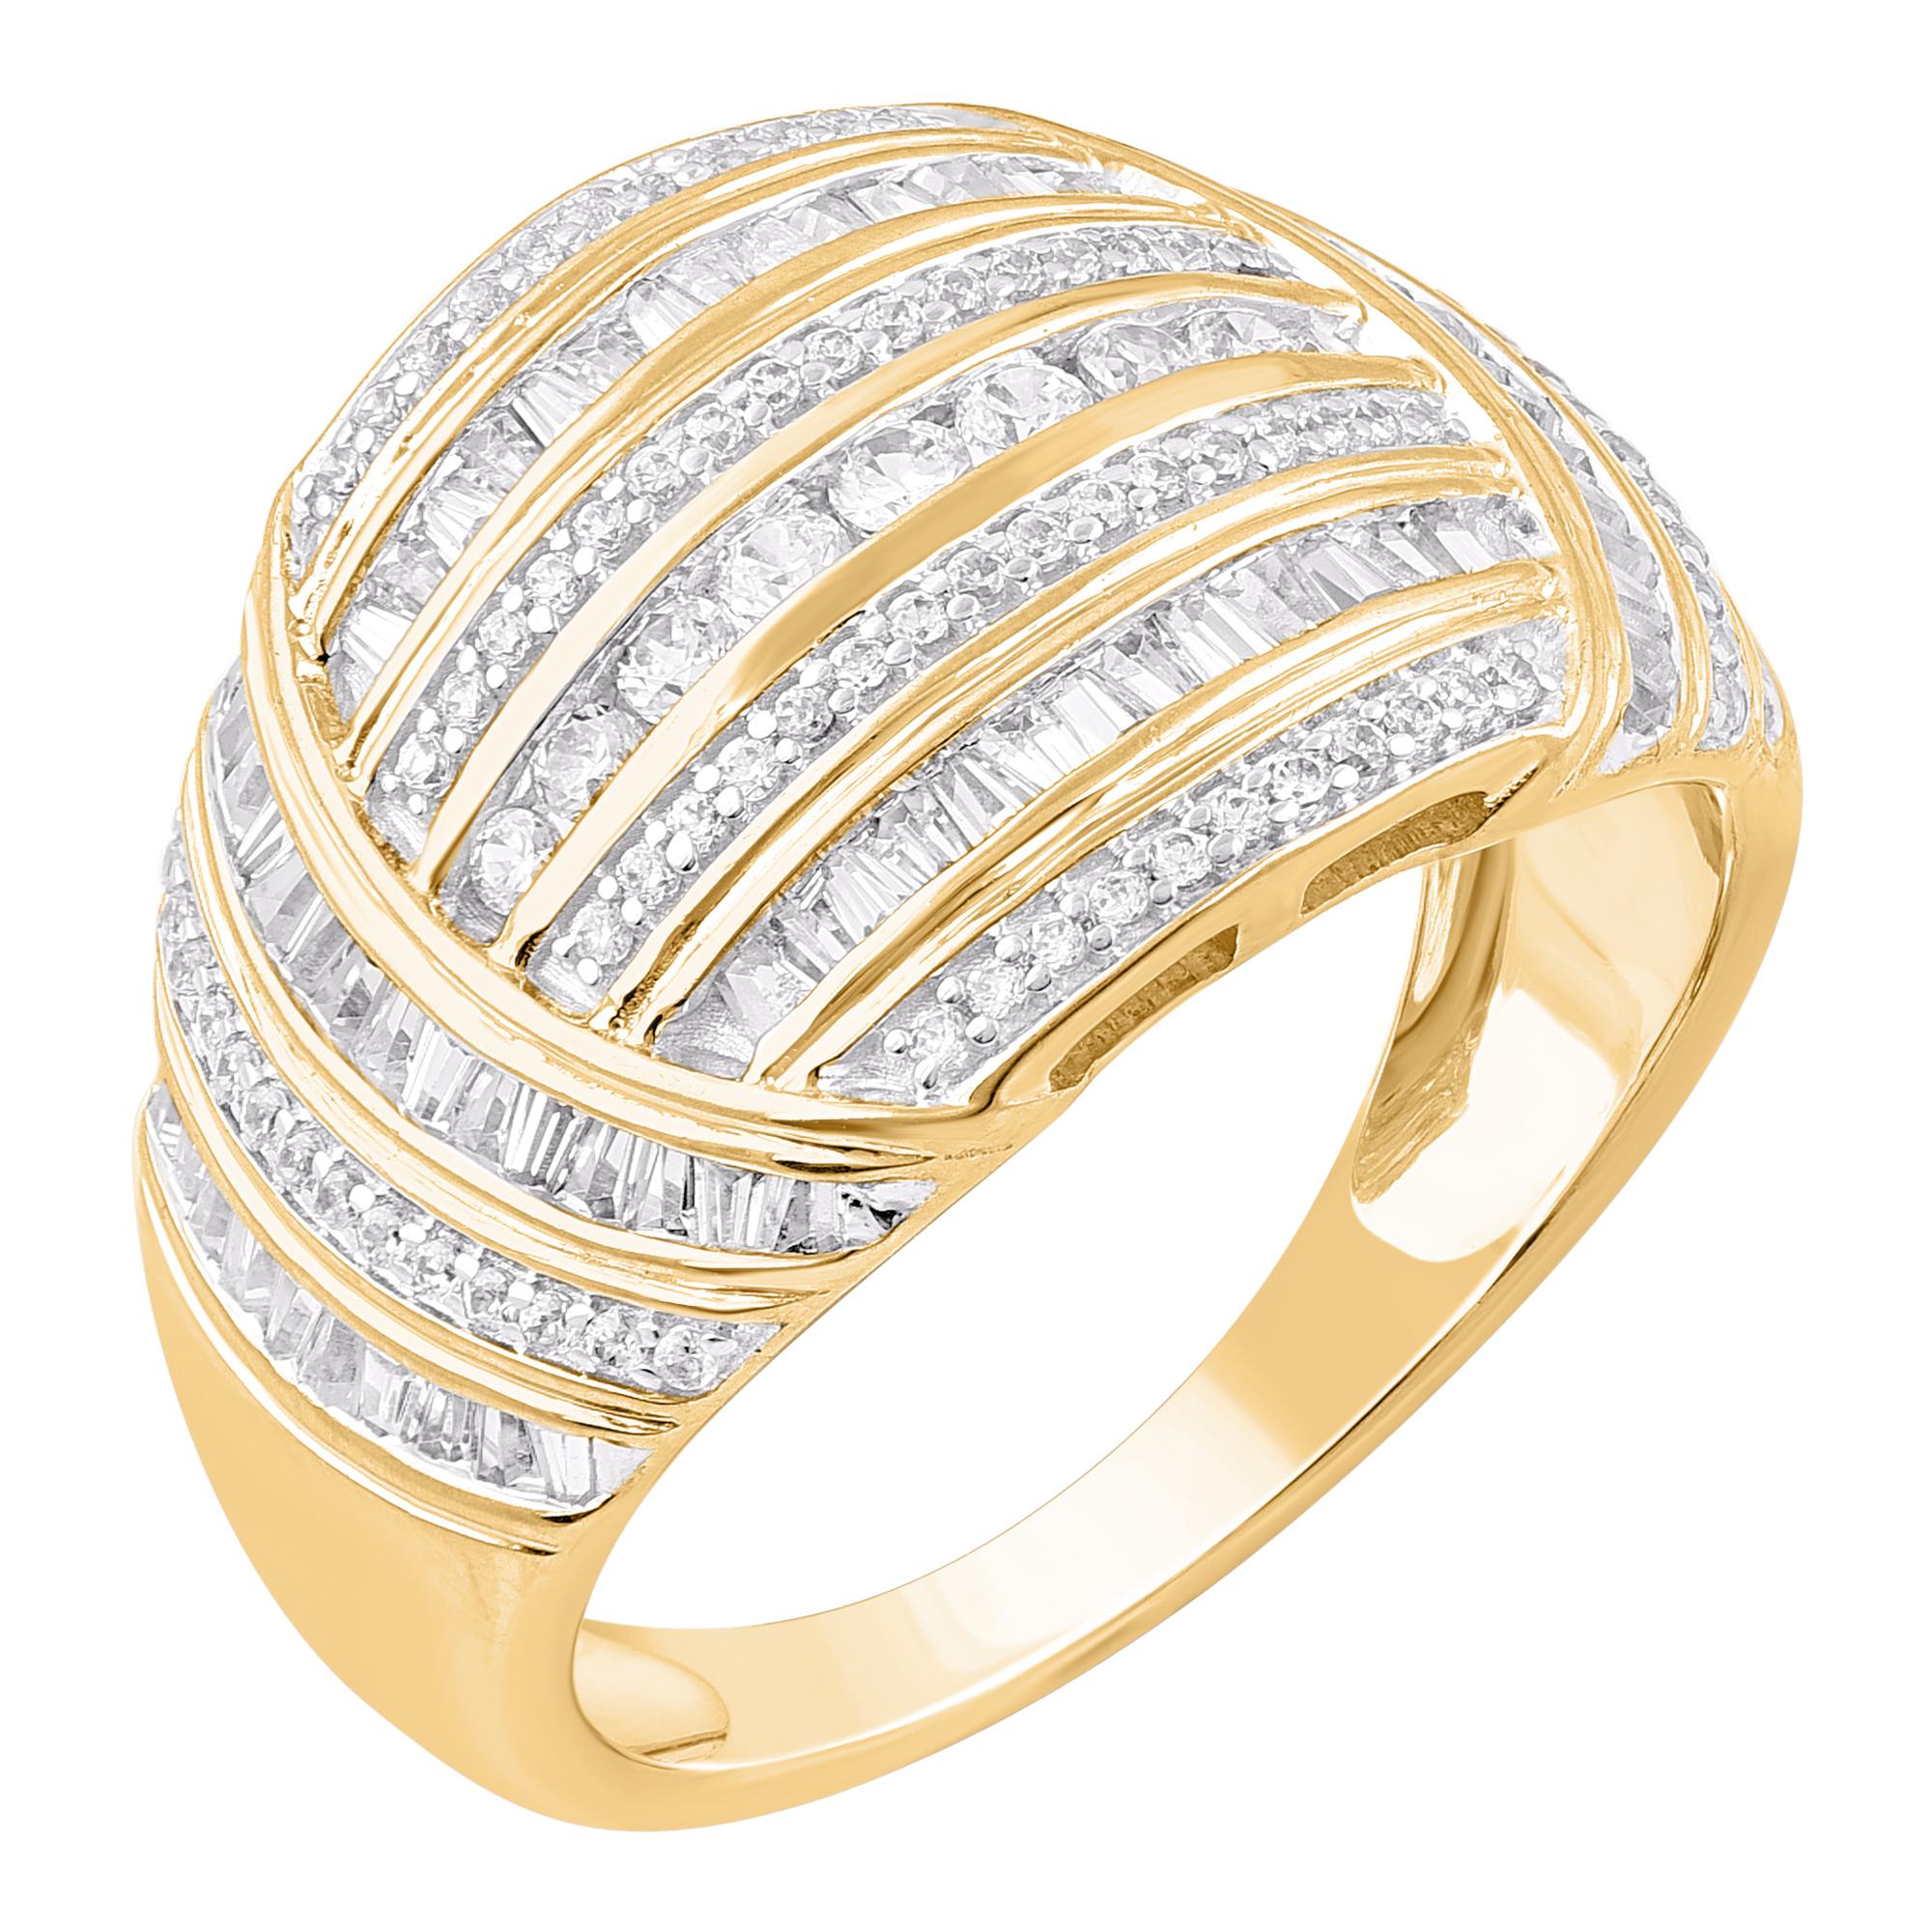 Sie wird den mühelosen Look dieses anmutigen, kuppelförmigen Diamantrings bewundern, der wirklich exquisit ist. Der Ring ist aus 14-karätigem Gold in Ihrer Wahl von Weiß, Rose oder Gelb gefertigt und verfügt über 91 runde und 76 Baguette-Diamanten